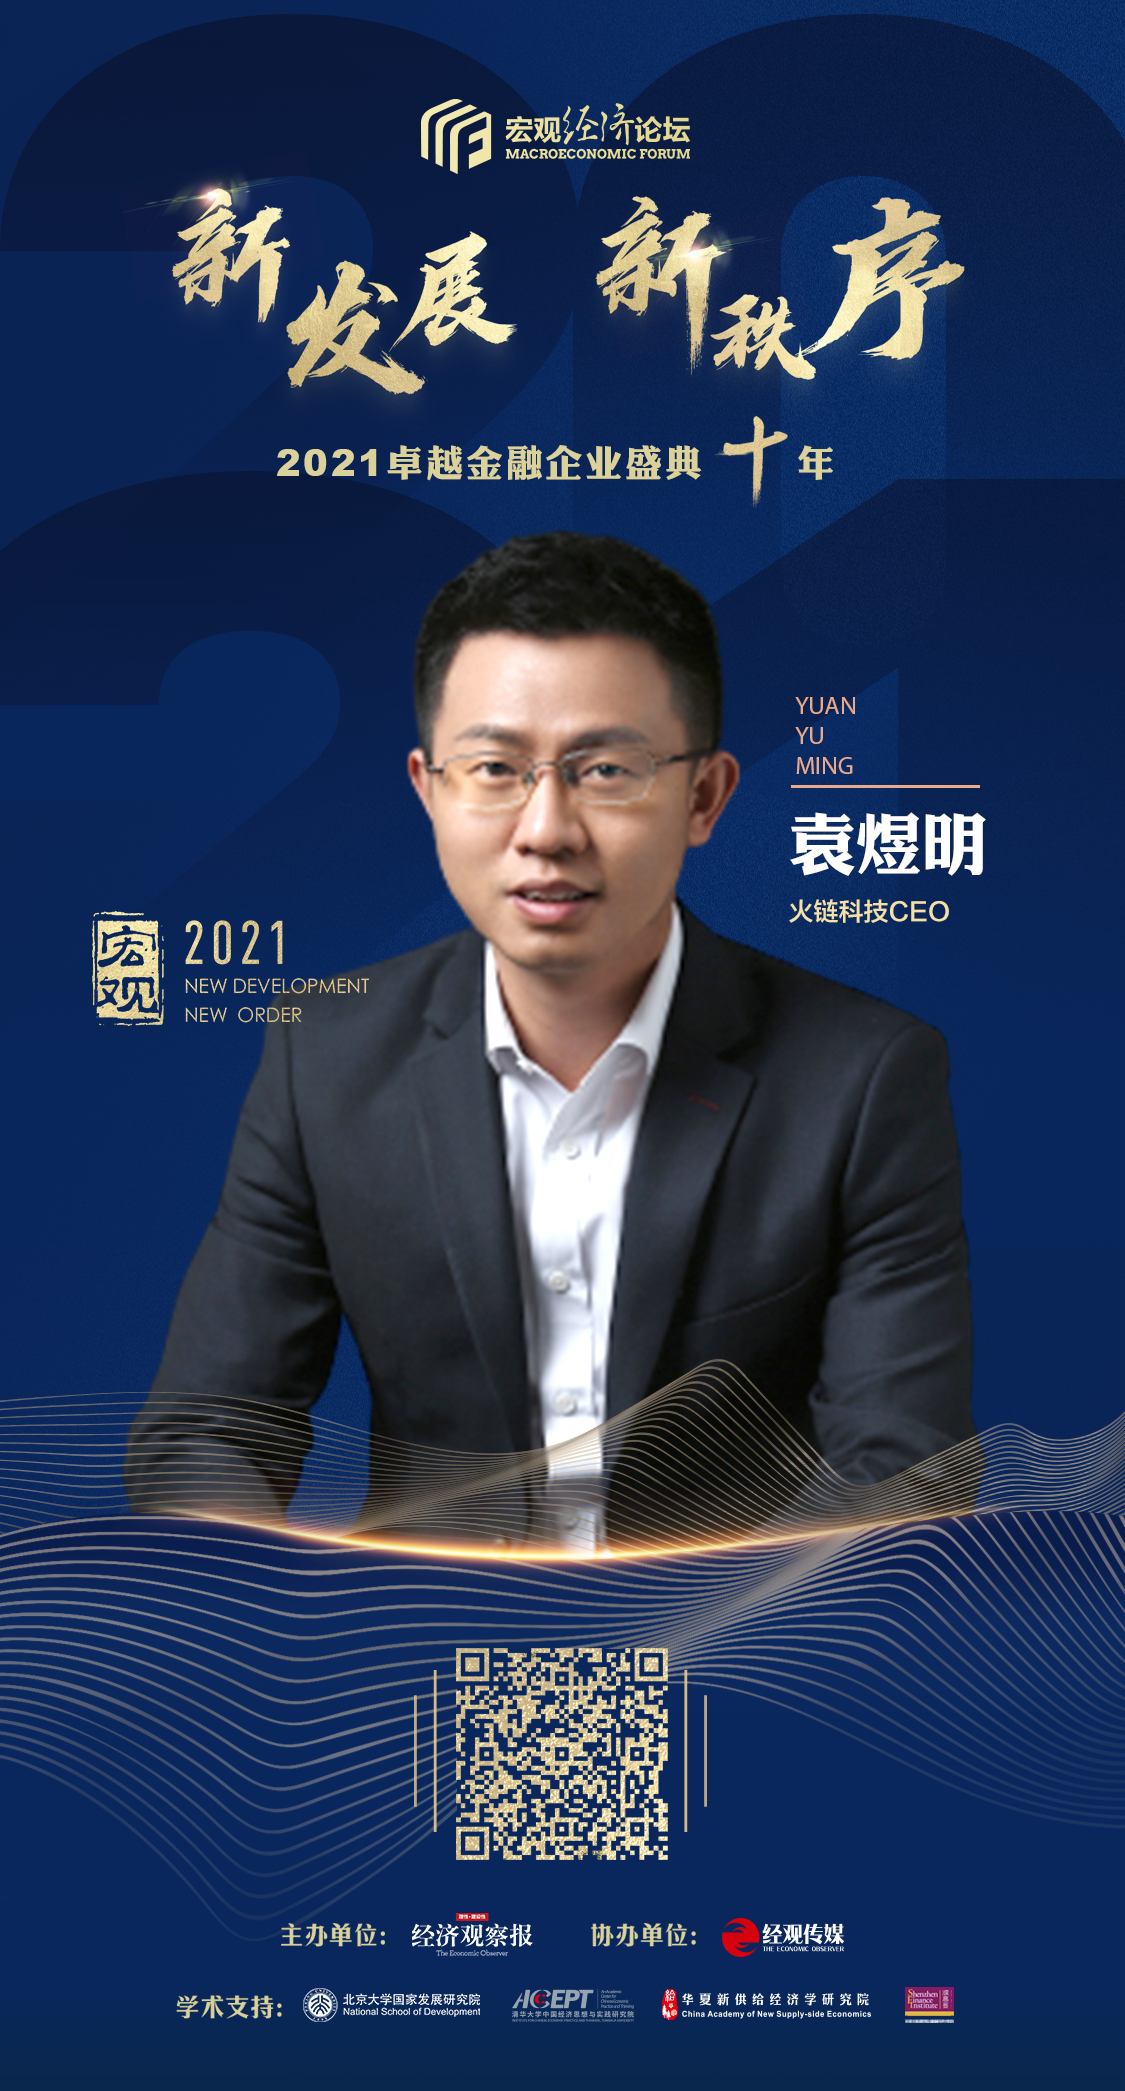 火链科技CEO袁煜明受邀出席 “新发展?新秩序 2021卓越金融企业盛典”